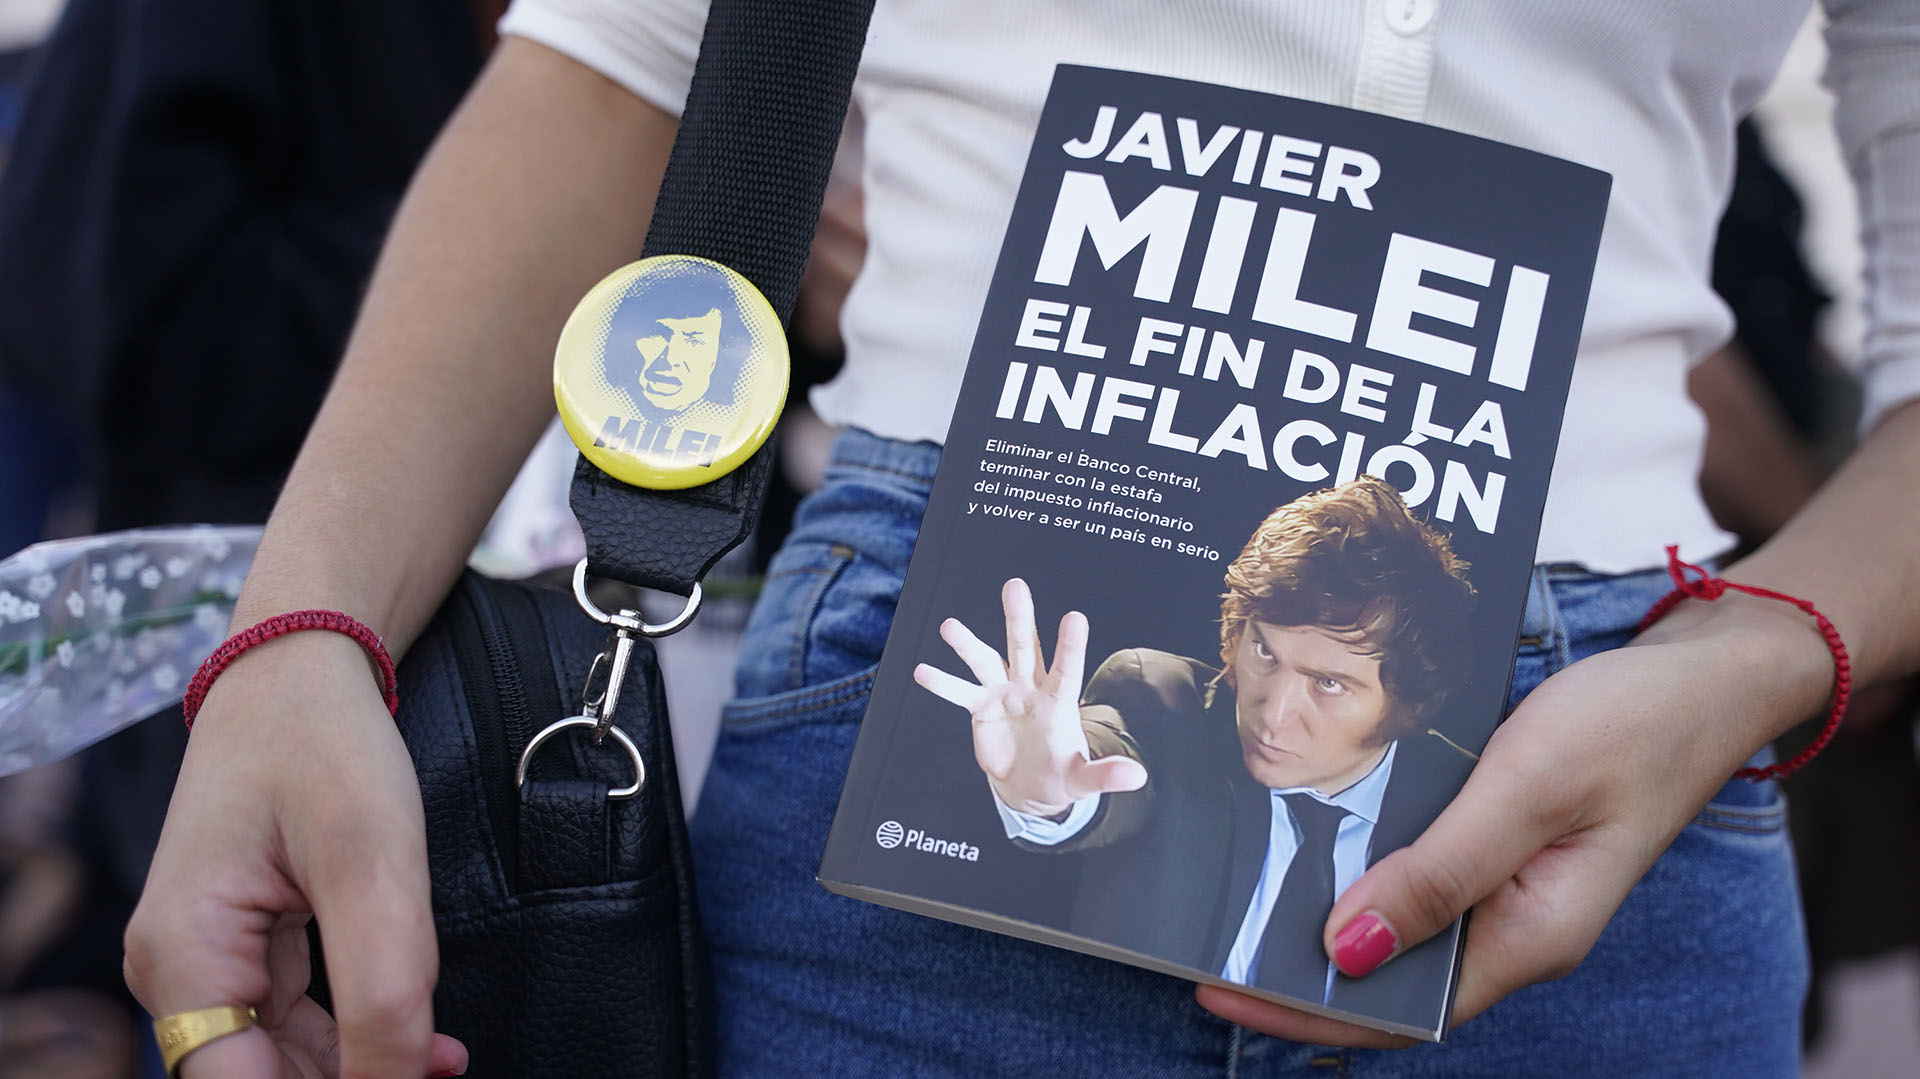 Milei presentó su último libro, que pone en tapa la palabra "inflación", máxima preocupación de los argentinos. Foto: Franco Fafasuli